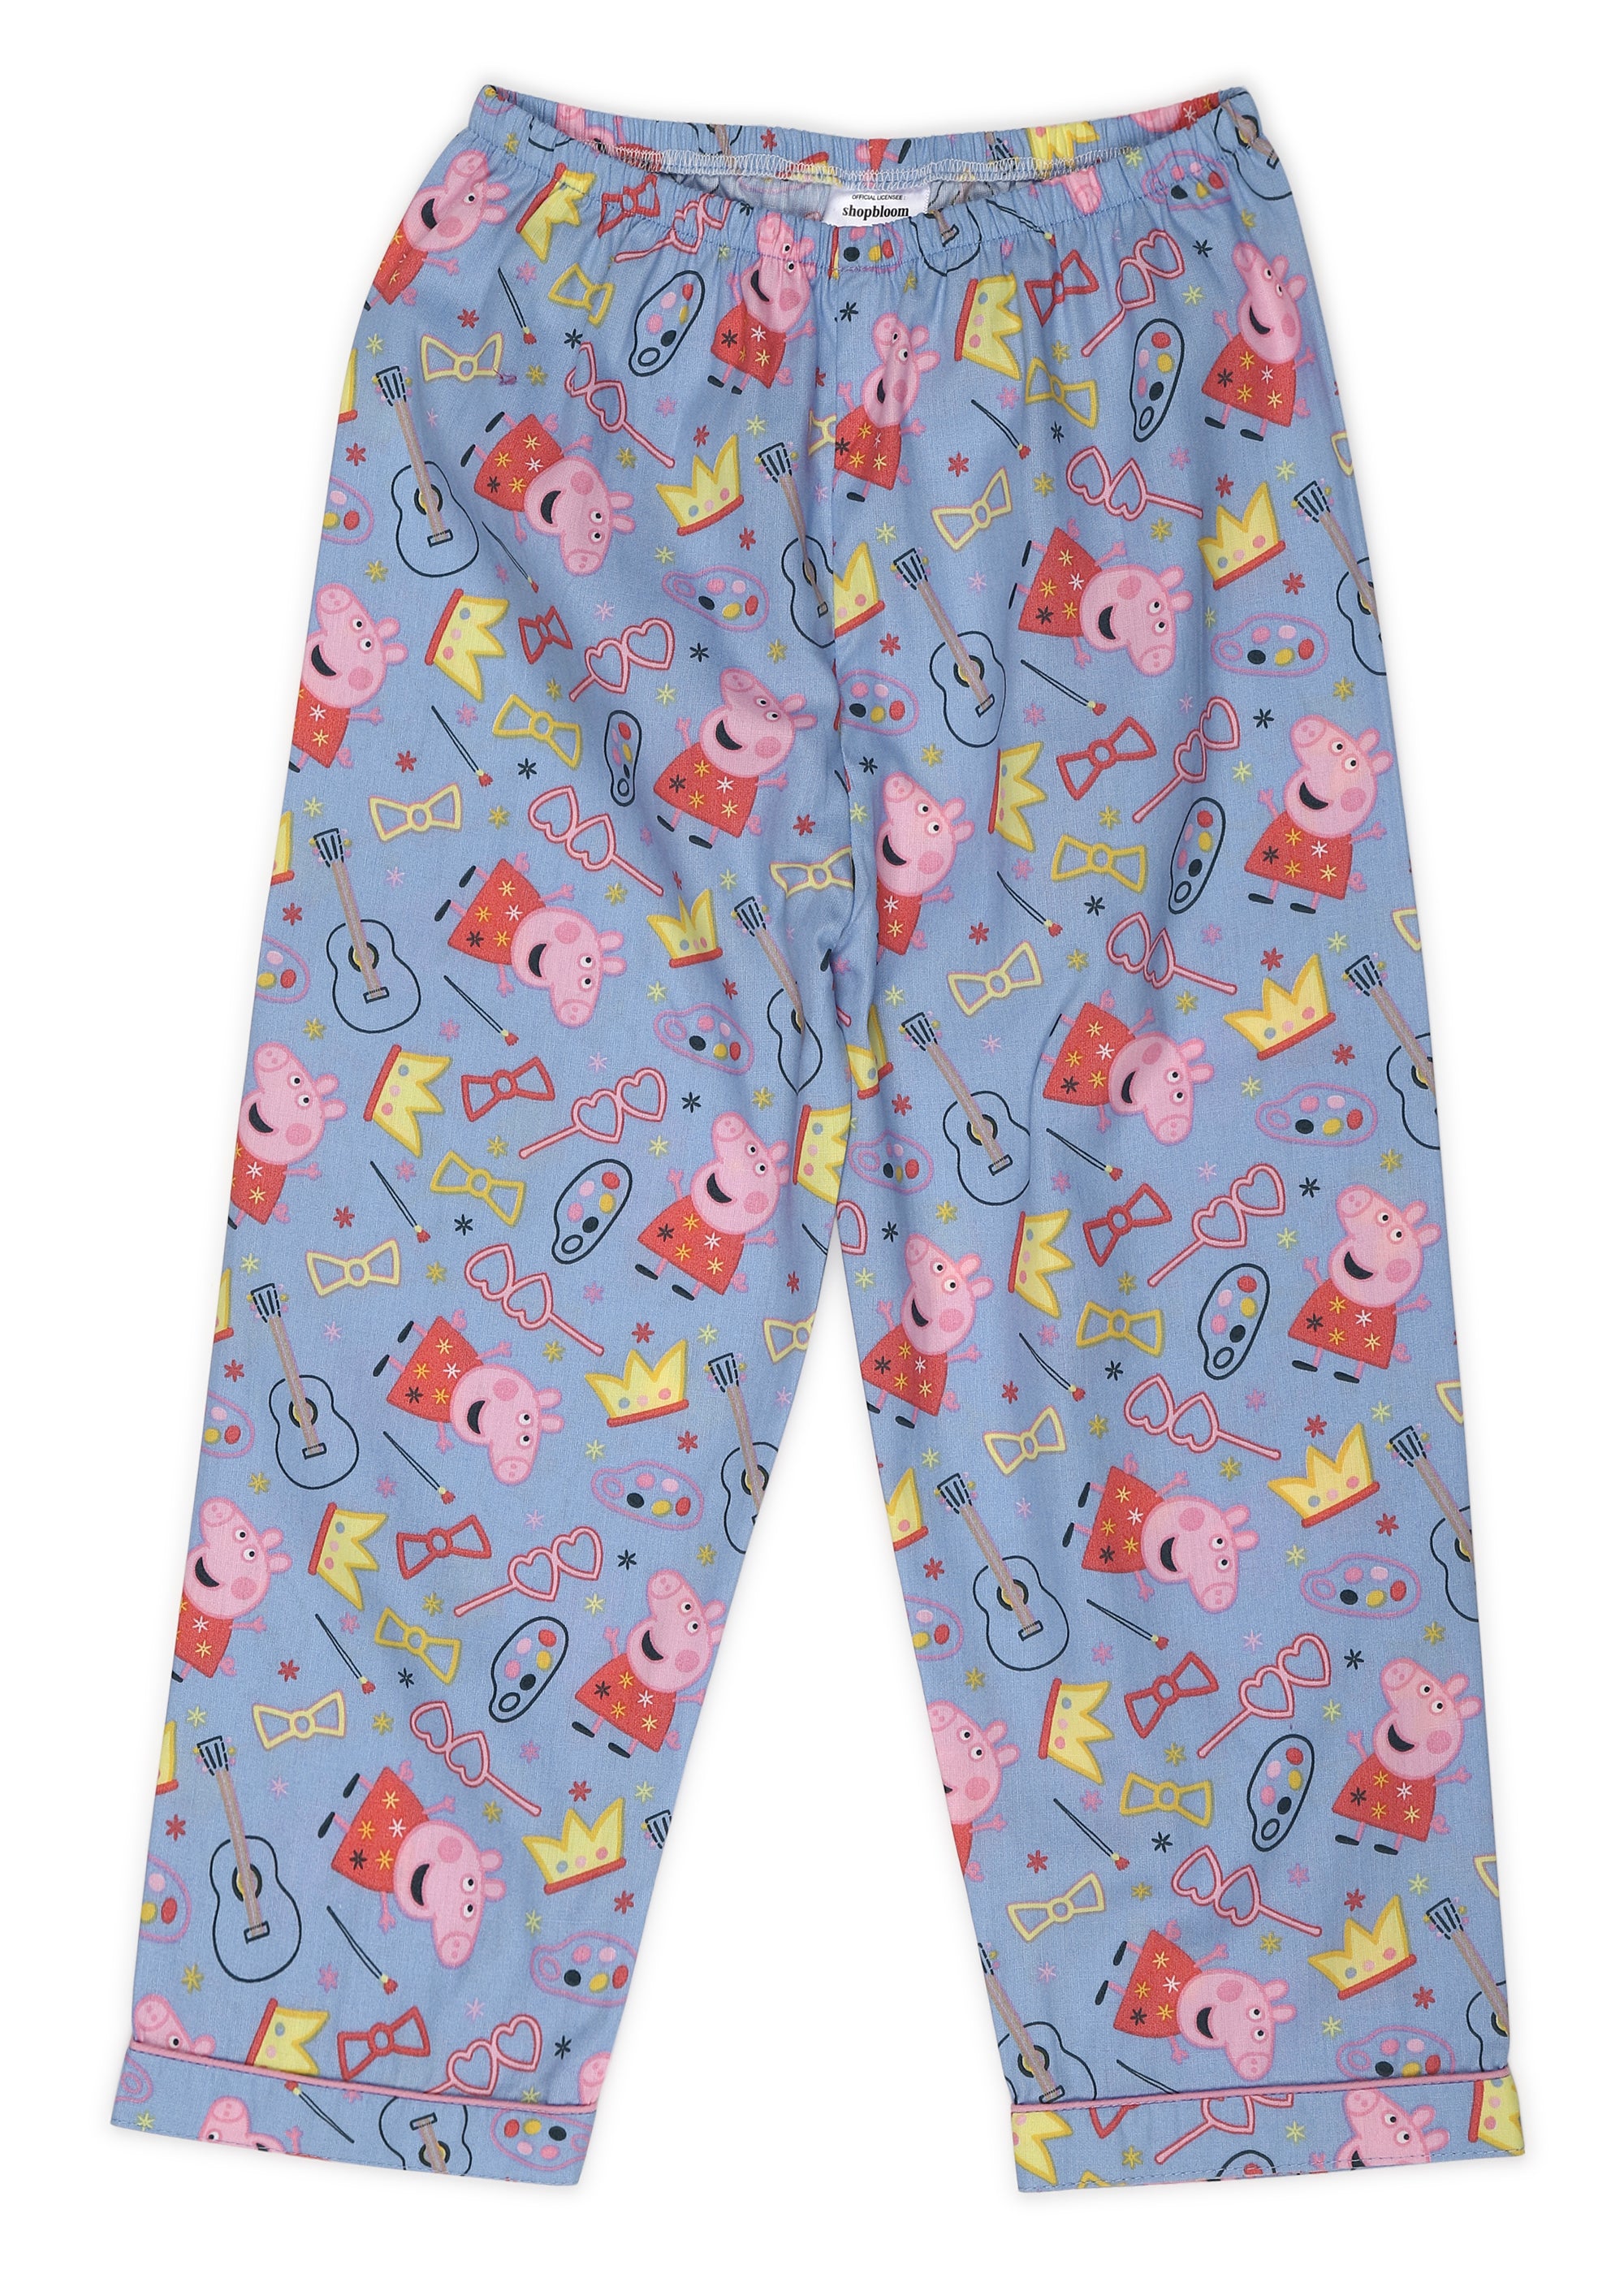 Peppa Crown Print Short Sleeve Kids Night Suit - Shopbloom